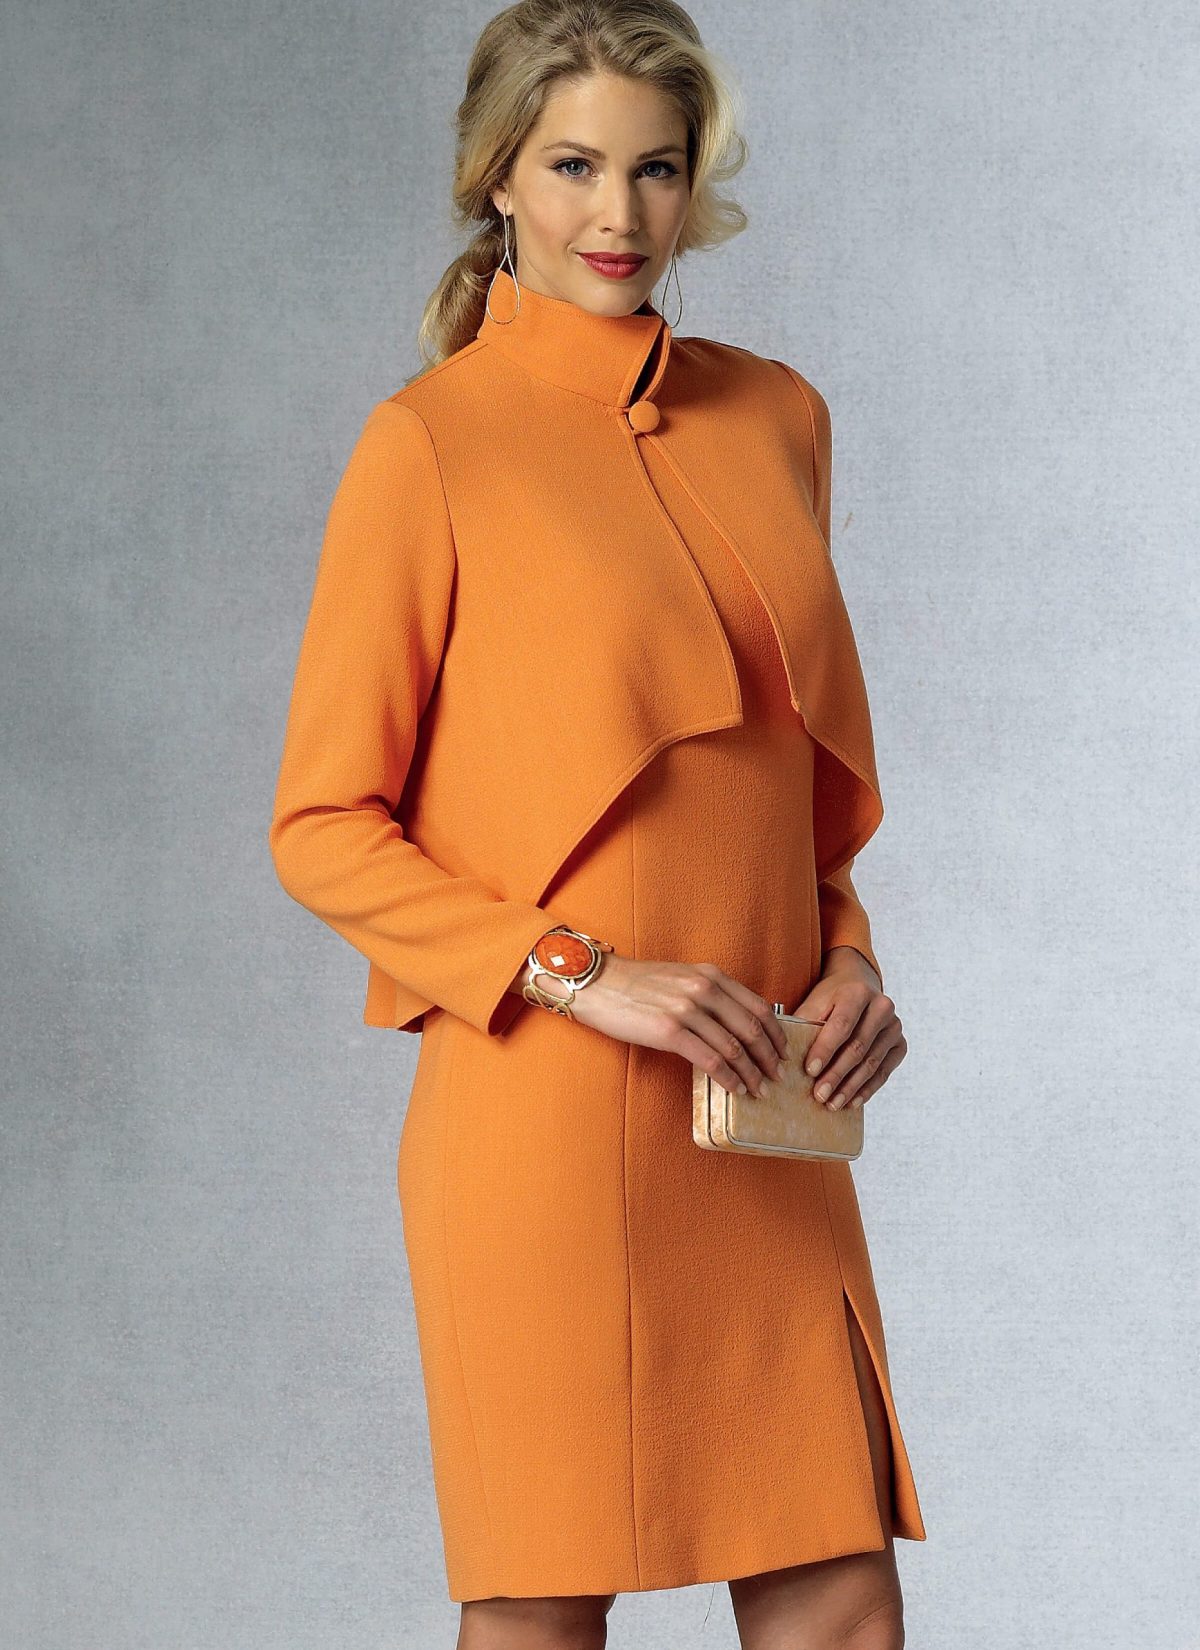 Vogue Patterns V1435 Misses' Jacket and Dress